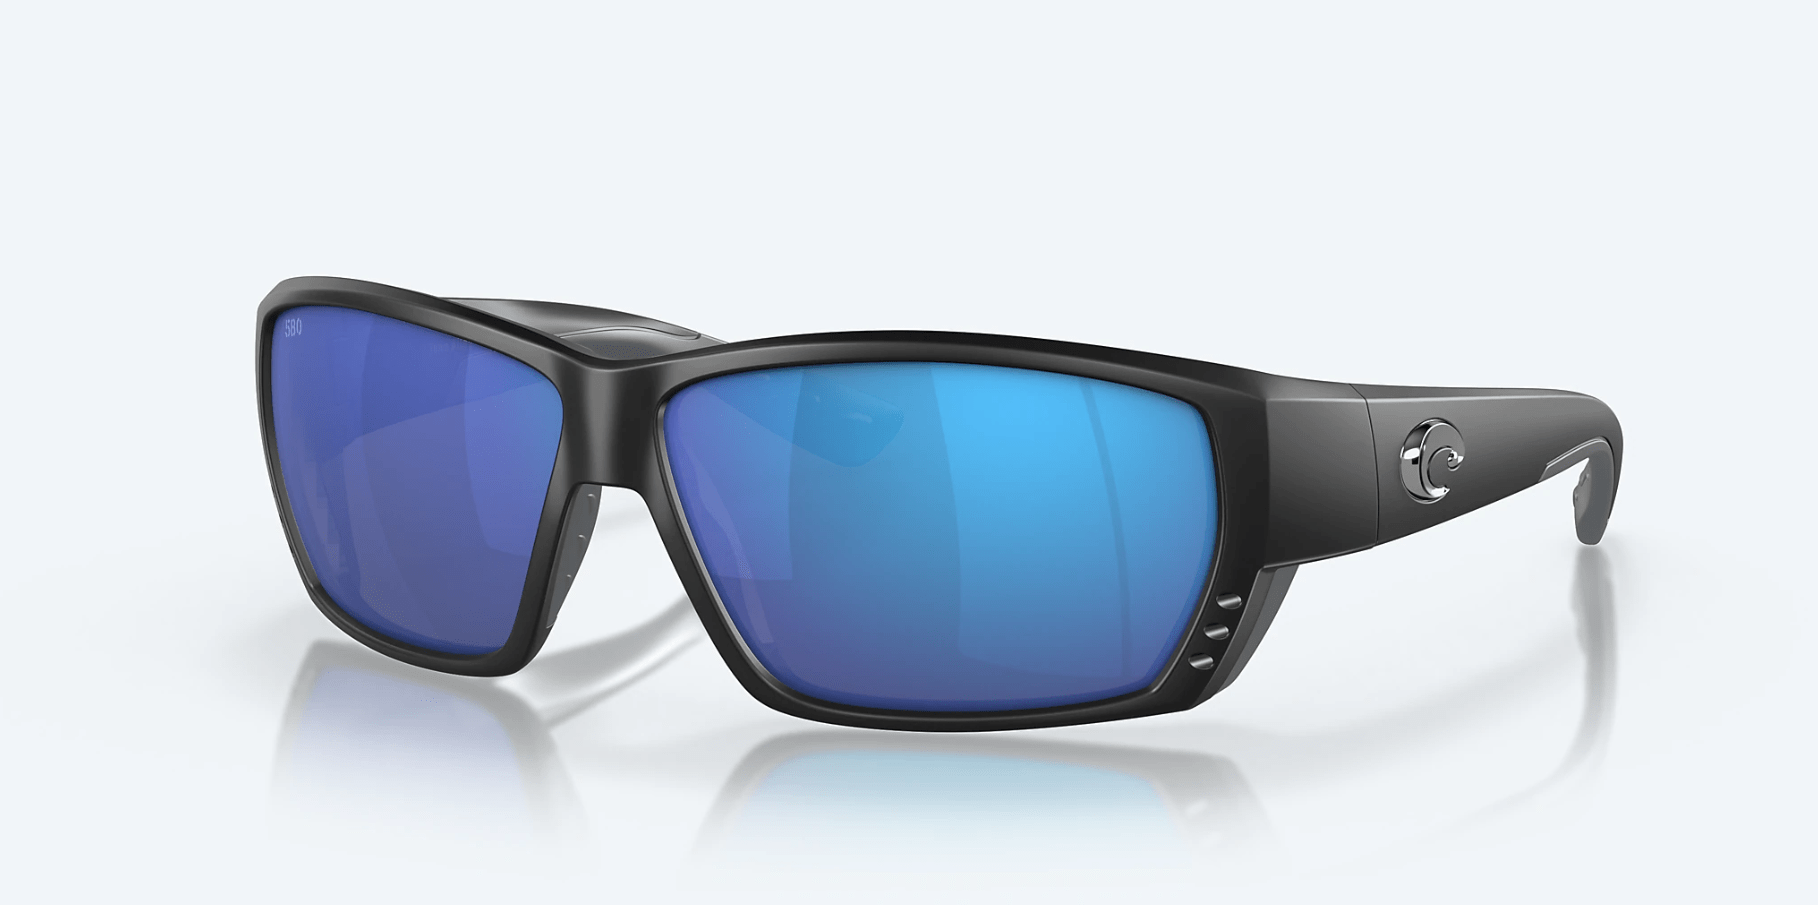 Costa Del Mar Tuna Alley Pro Sunglasses Matte Black Green Mirror 580g